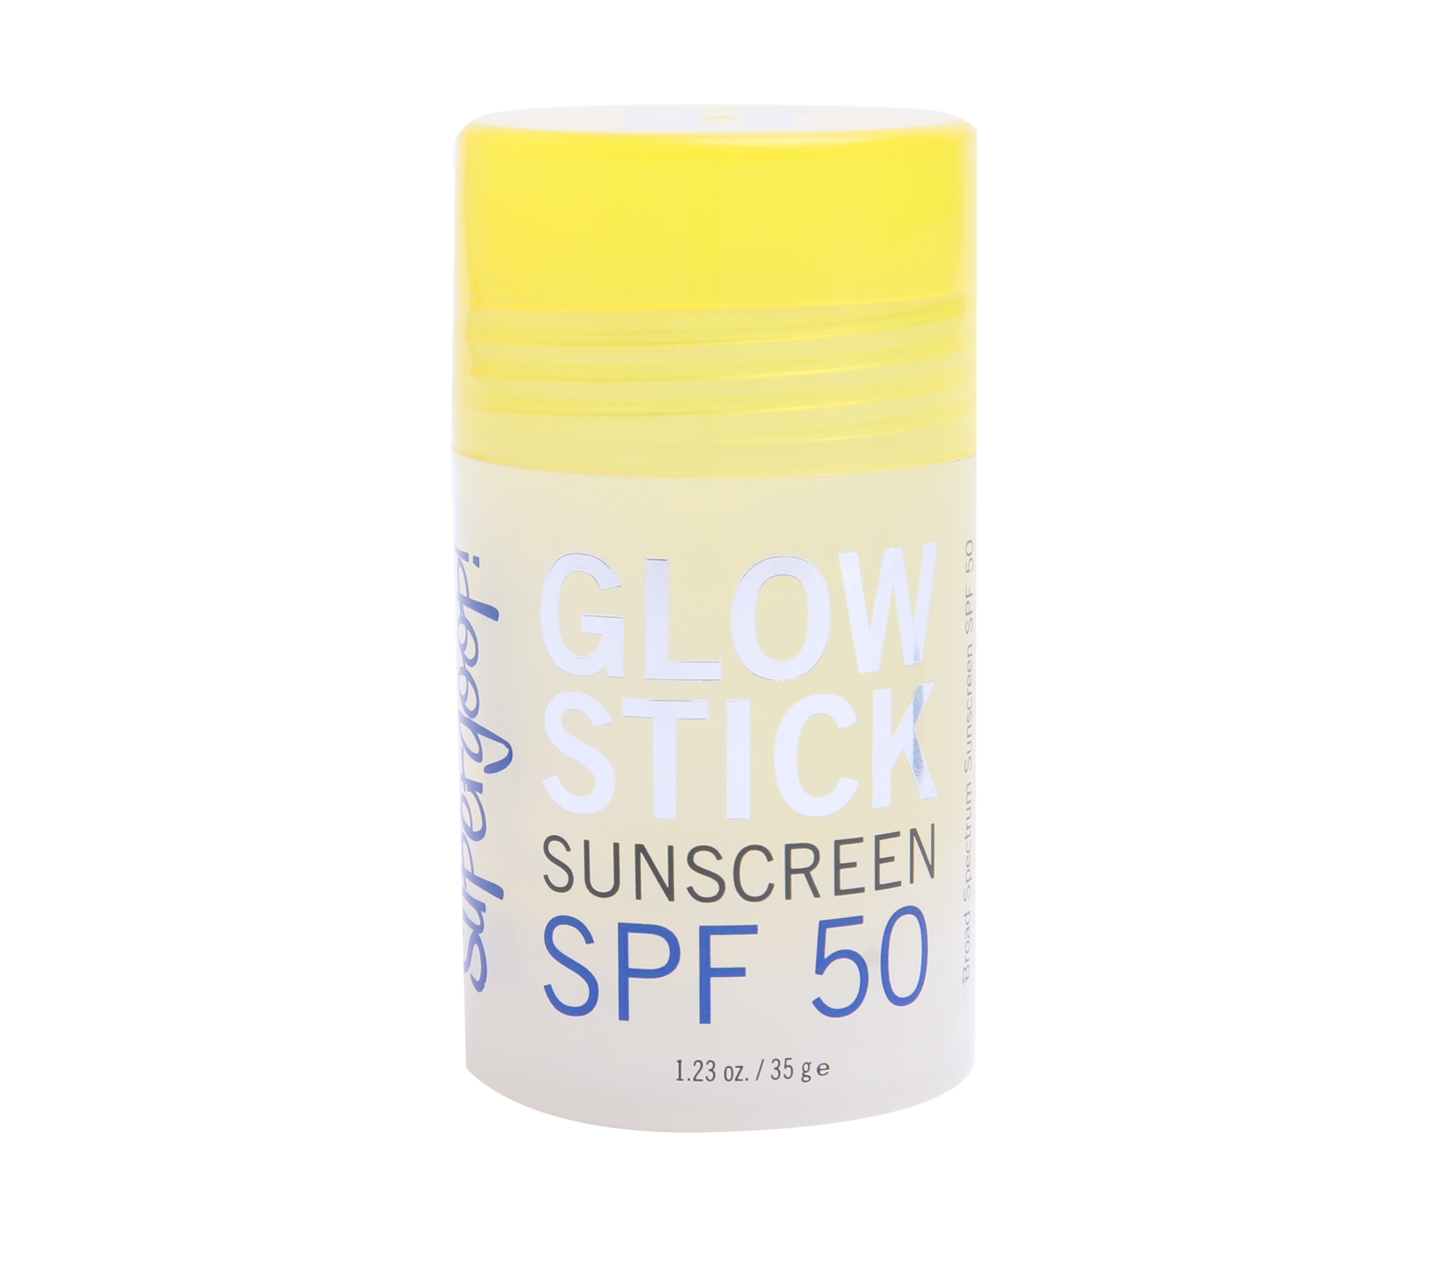 Supergoop Glow Stick Sunscreen SPF 50